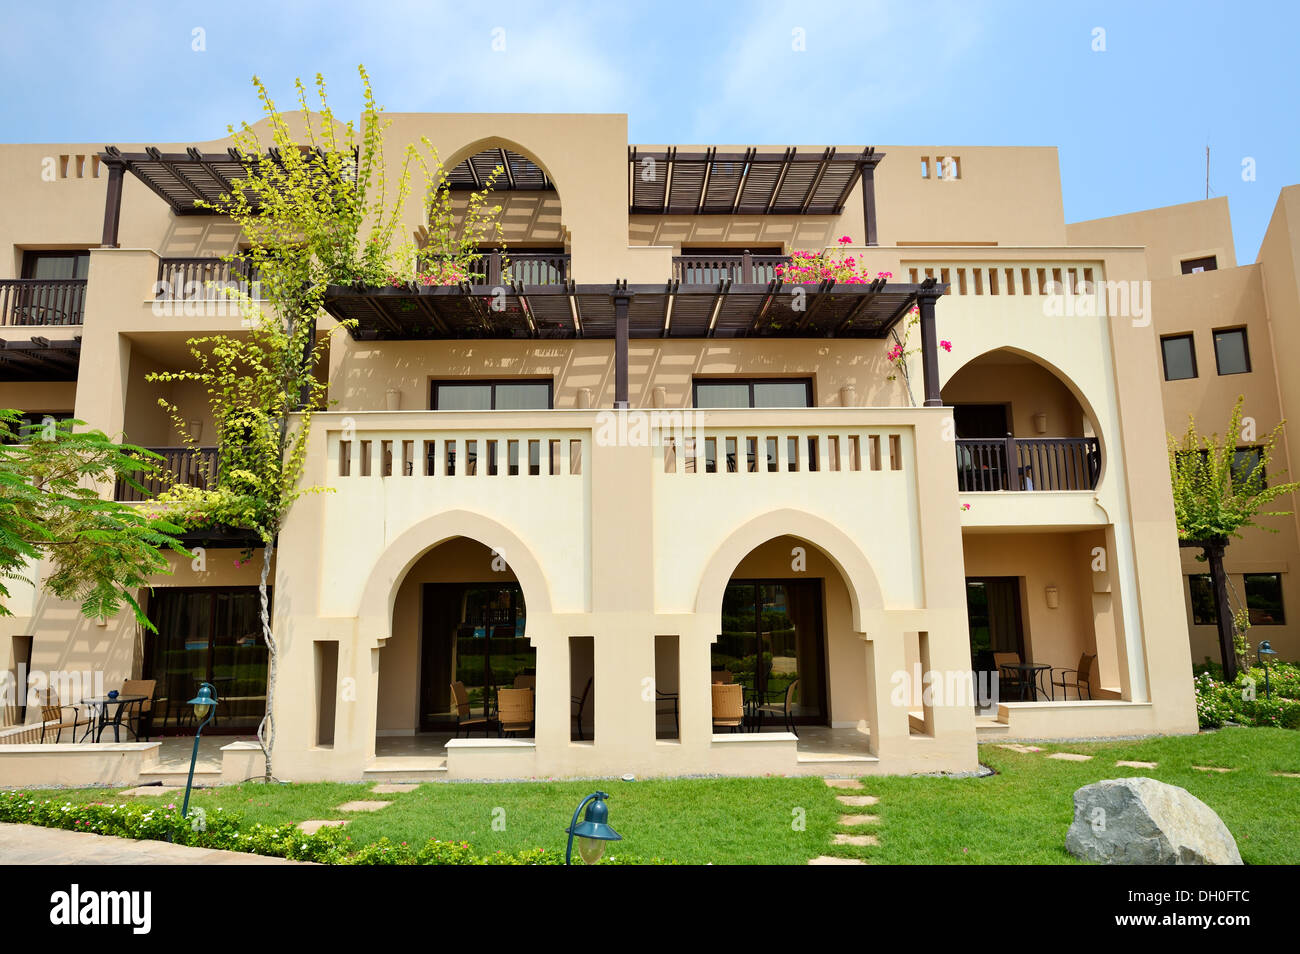 Las villas de estilo árabe en un hotel de lujo, Fujairah, Emiratos Árabes Unidos Foto de stock